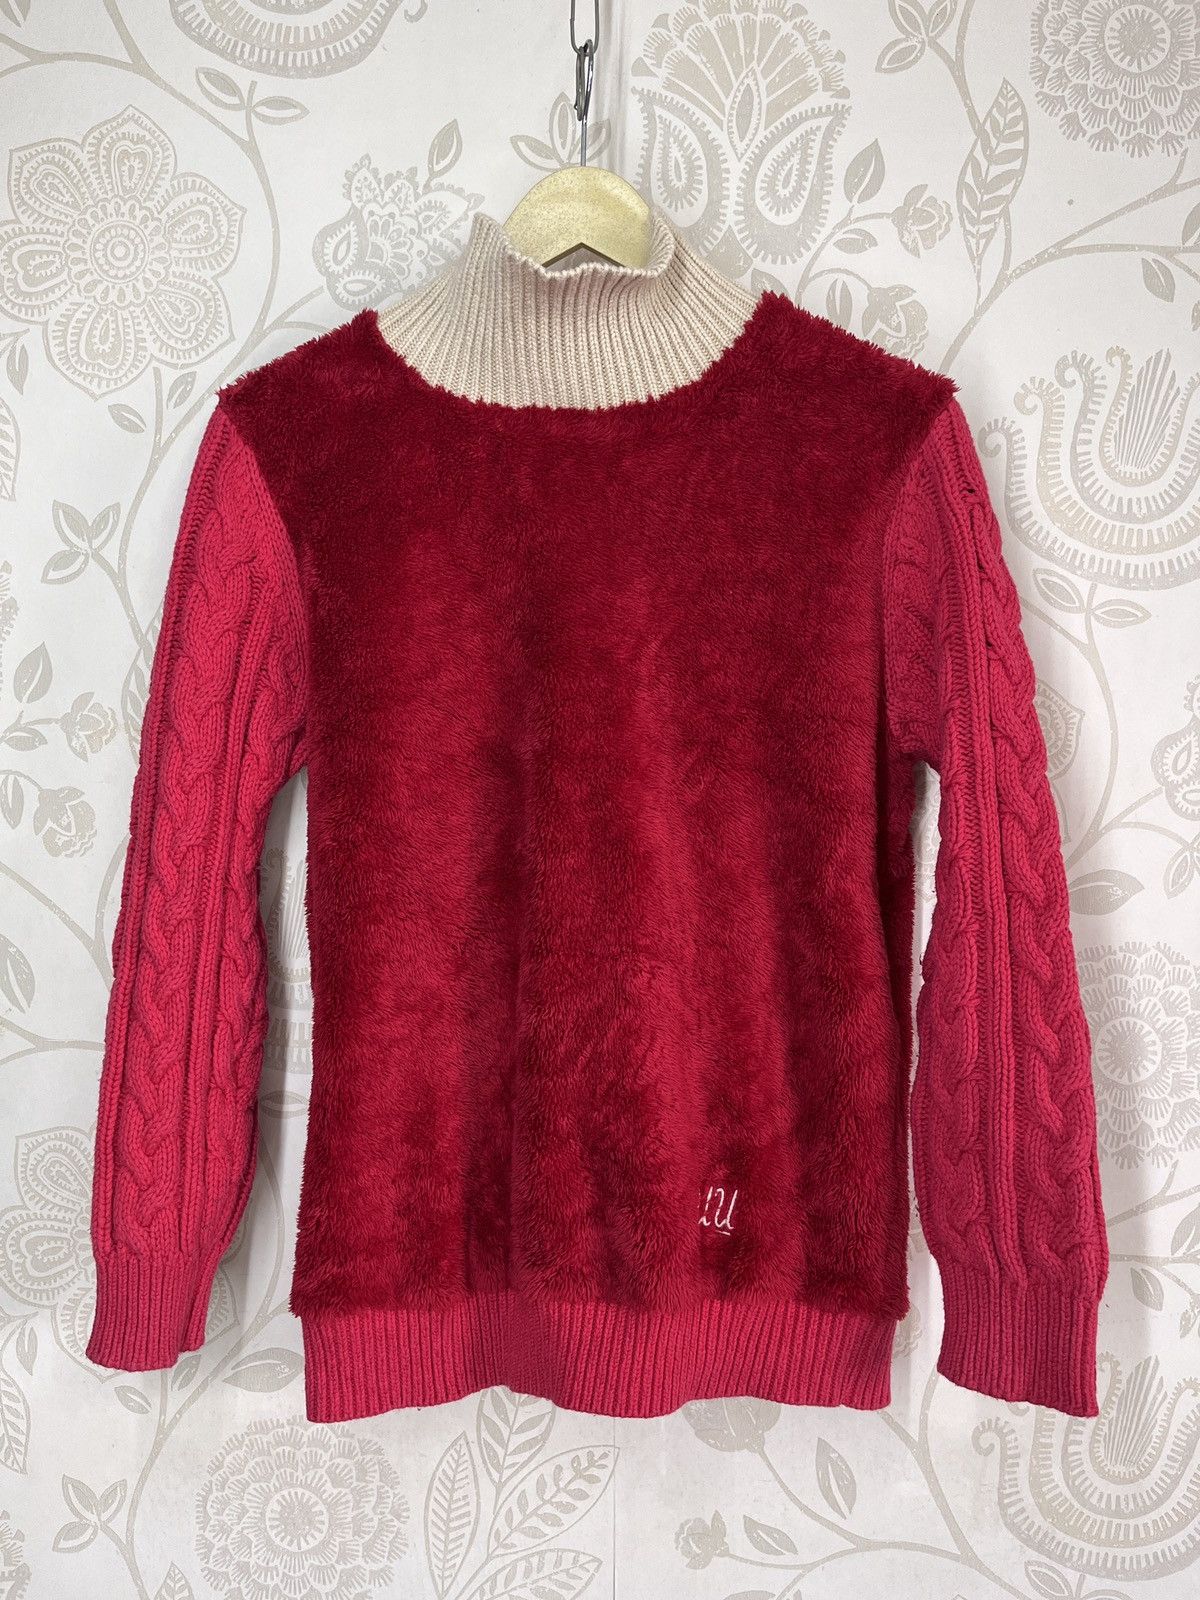 Undercover X Uniqlo Sweater Rare Red Colour - 20